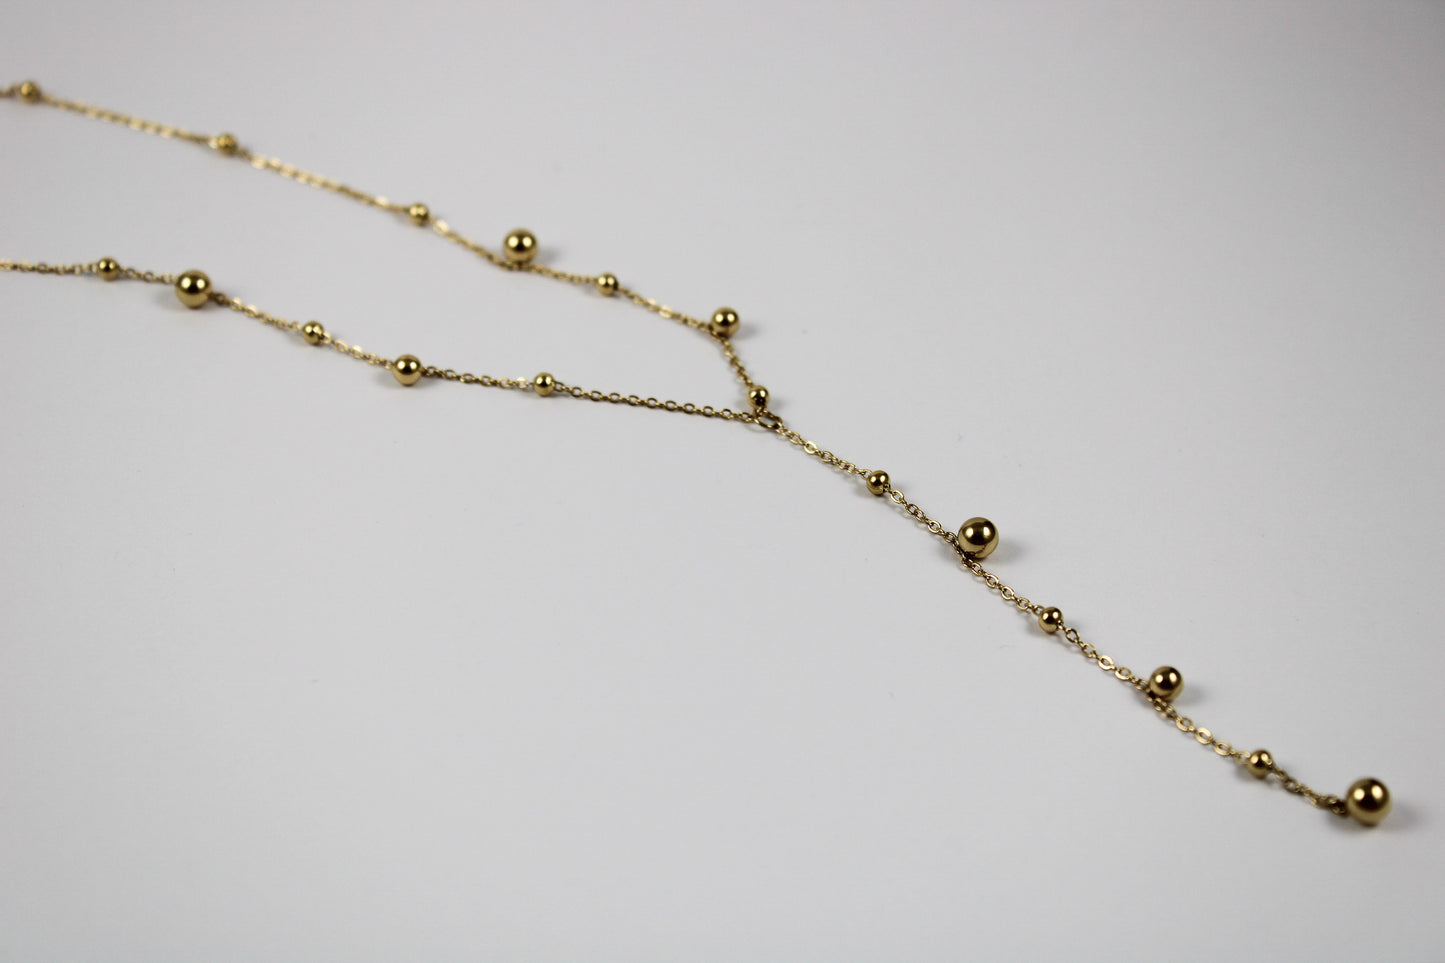 Golden Ceibo necklace